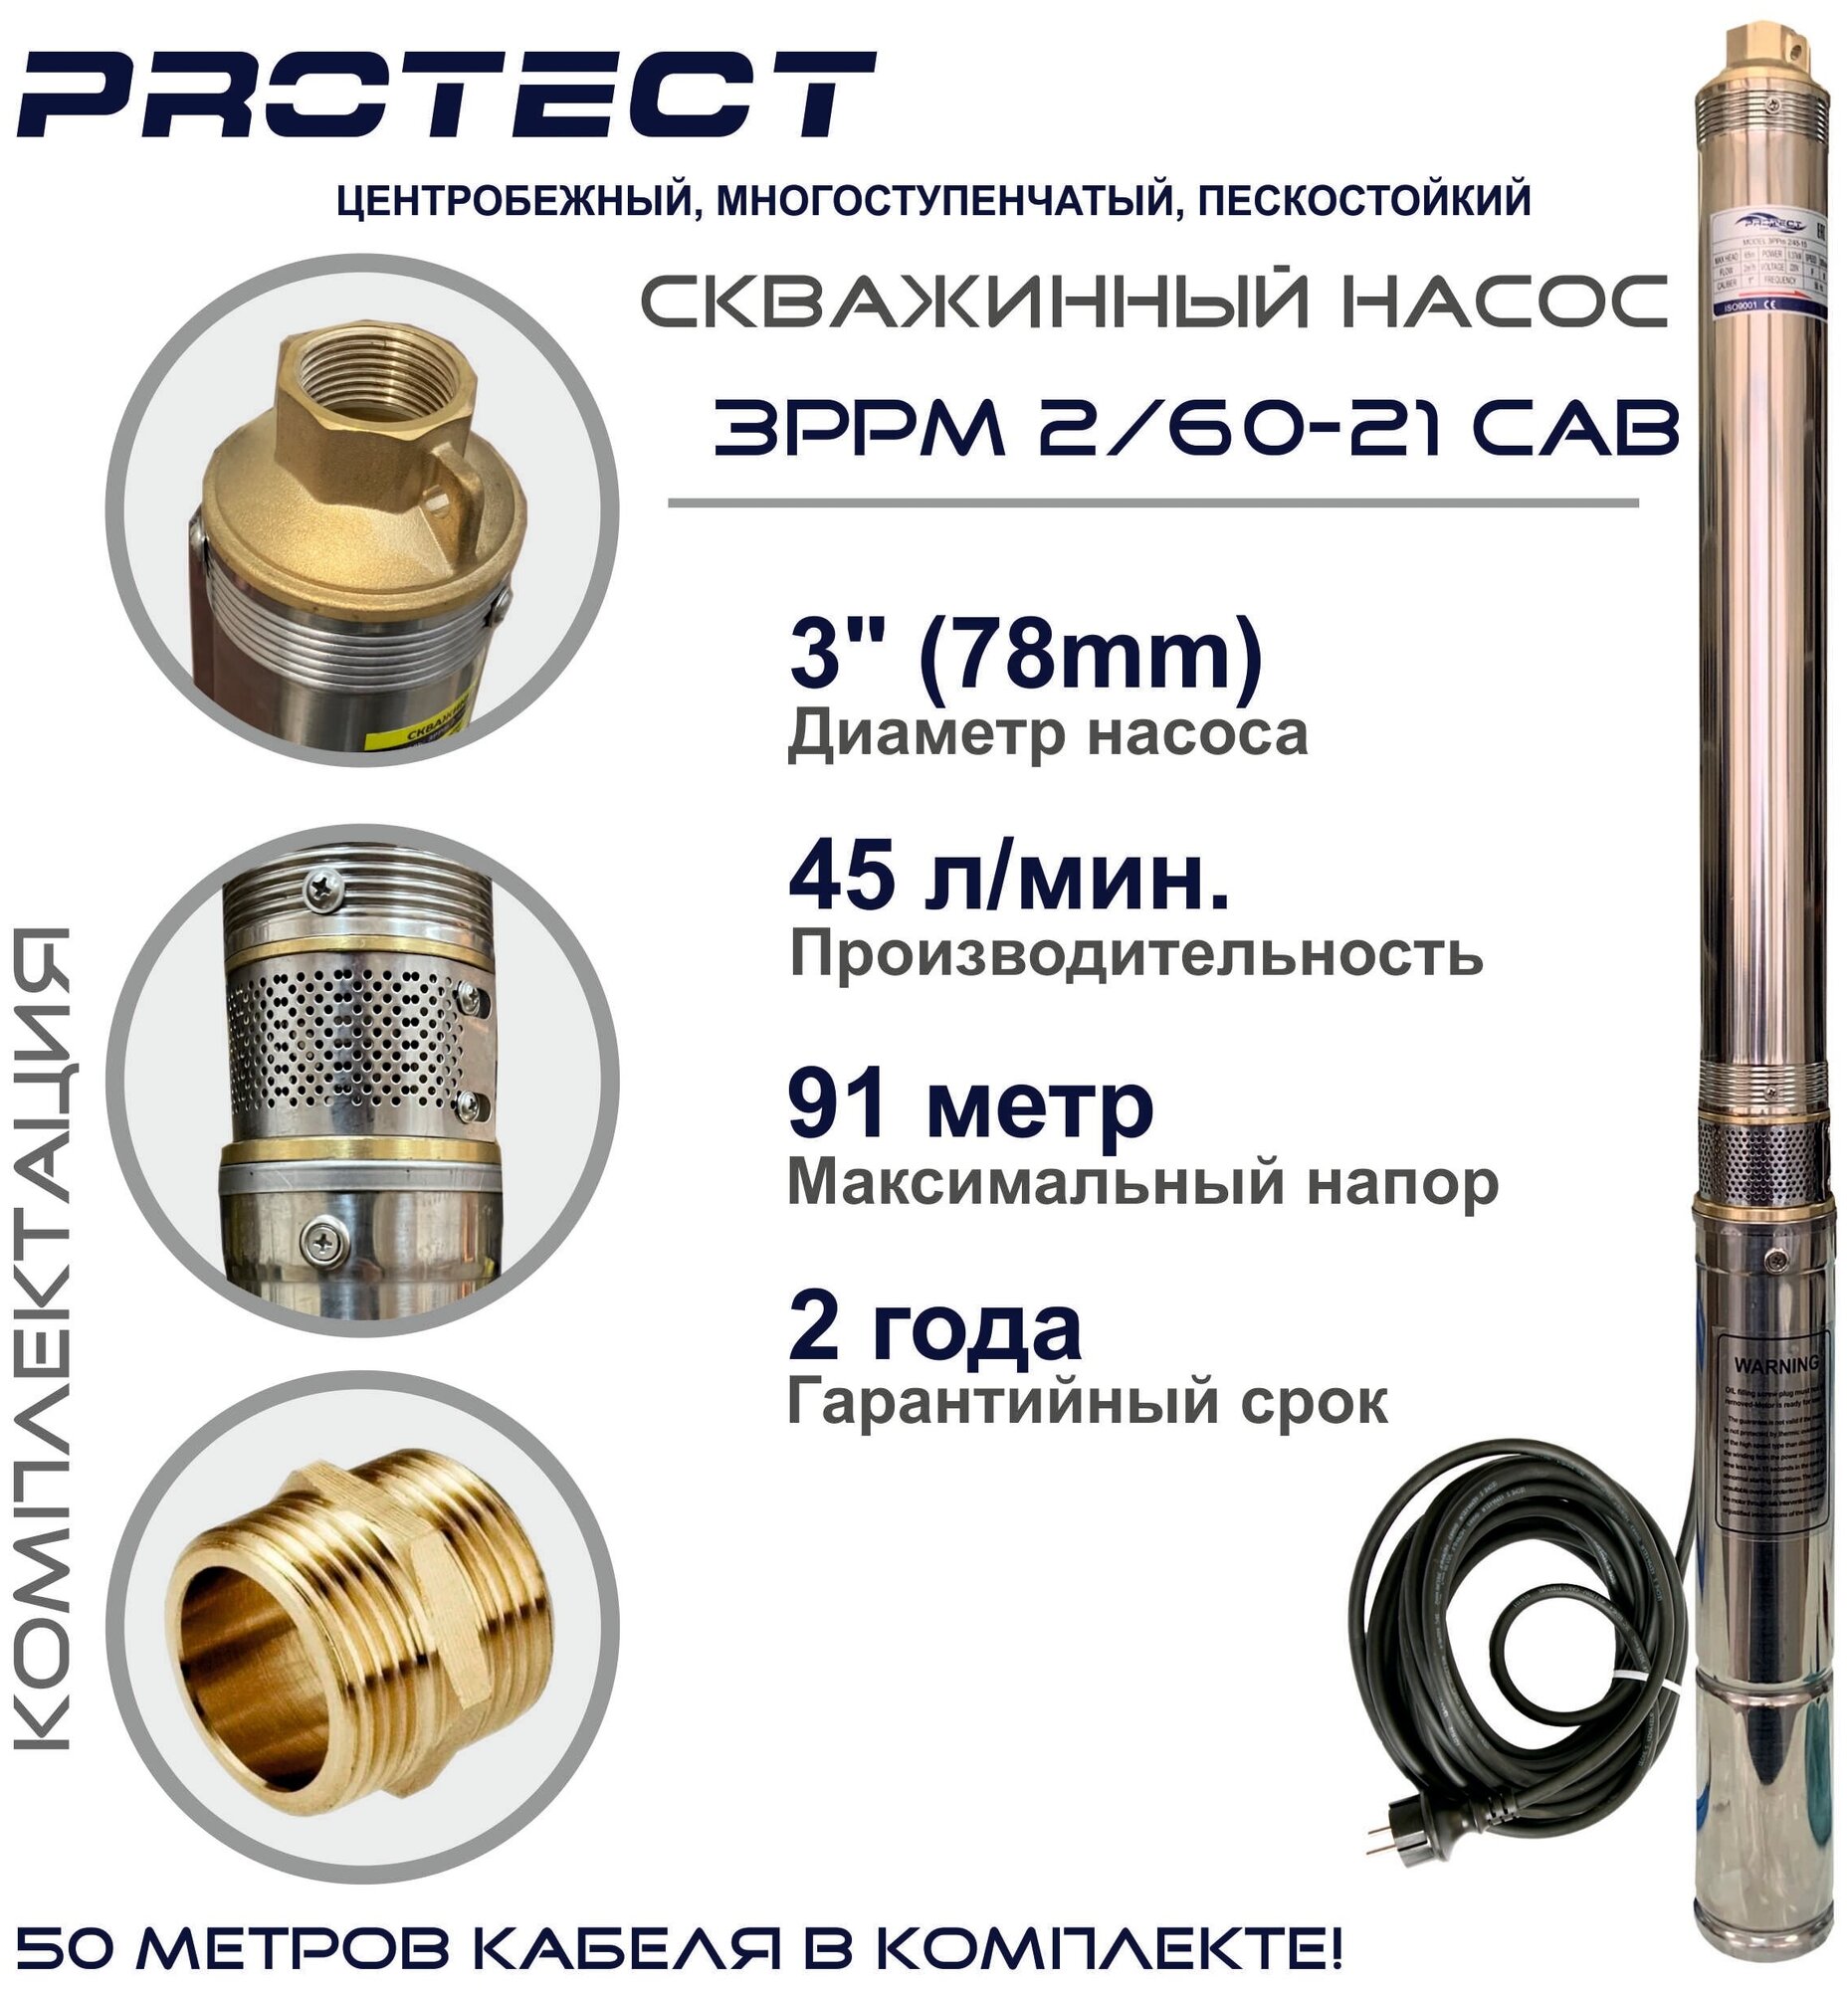 Скважинный насос PROTECT 3PPm 2/60-21 CAB (кабель 50 метров)